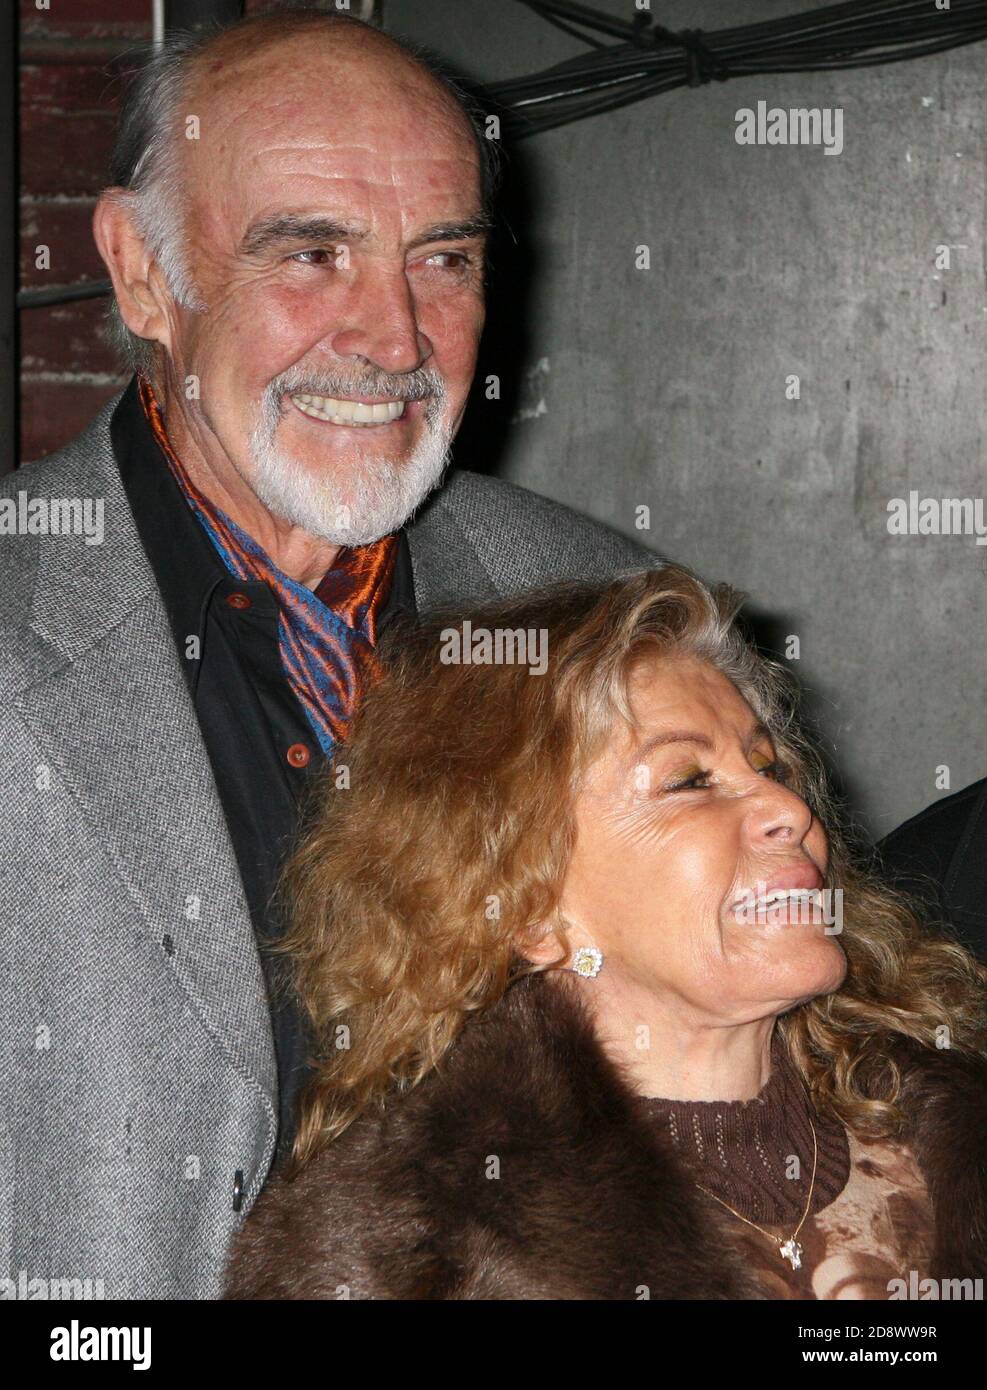 Sean Connery et sa femme Micheline Roquebrune-Connery visitent les coulisses après la représentation de Harold Pintor « The Homecoming » au Cort Theatre de New York le 8 mars 2008. Crédit photo : Henry McGee/MediaPunch Banque D'Images